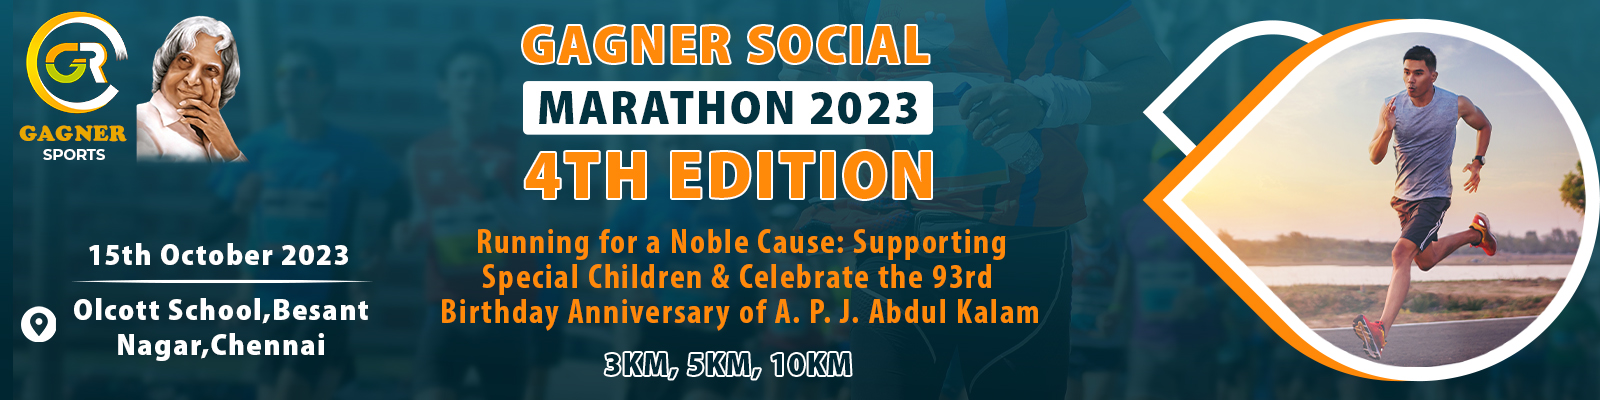 Gagner Social Marathon, Chennai – A Noble Effort For Special Children